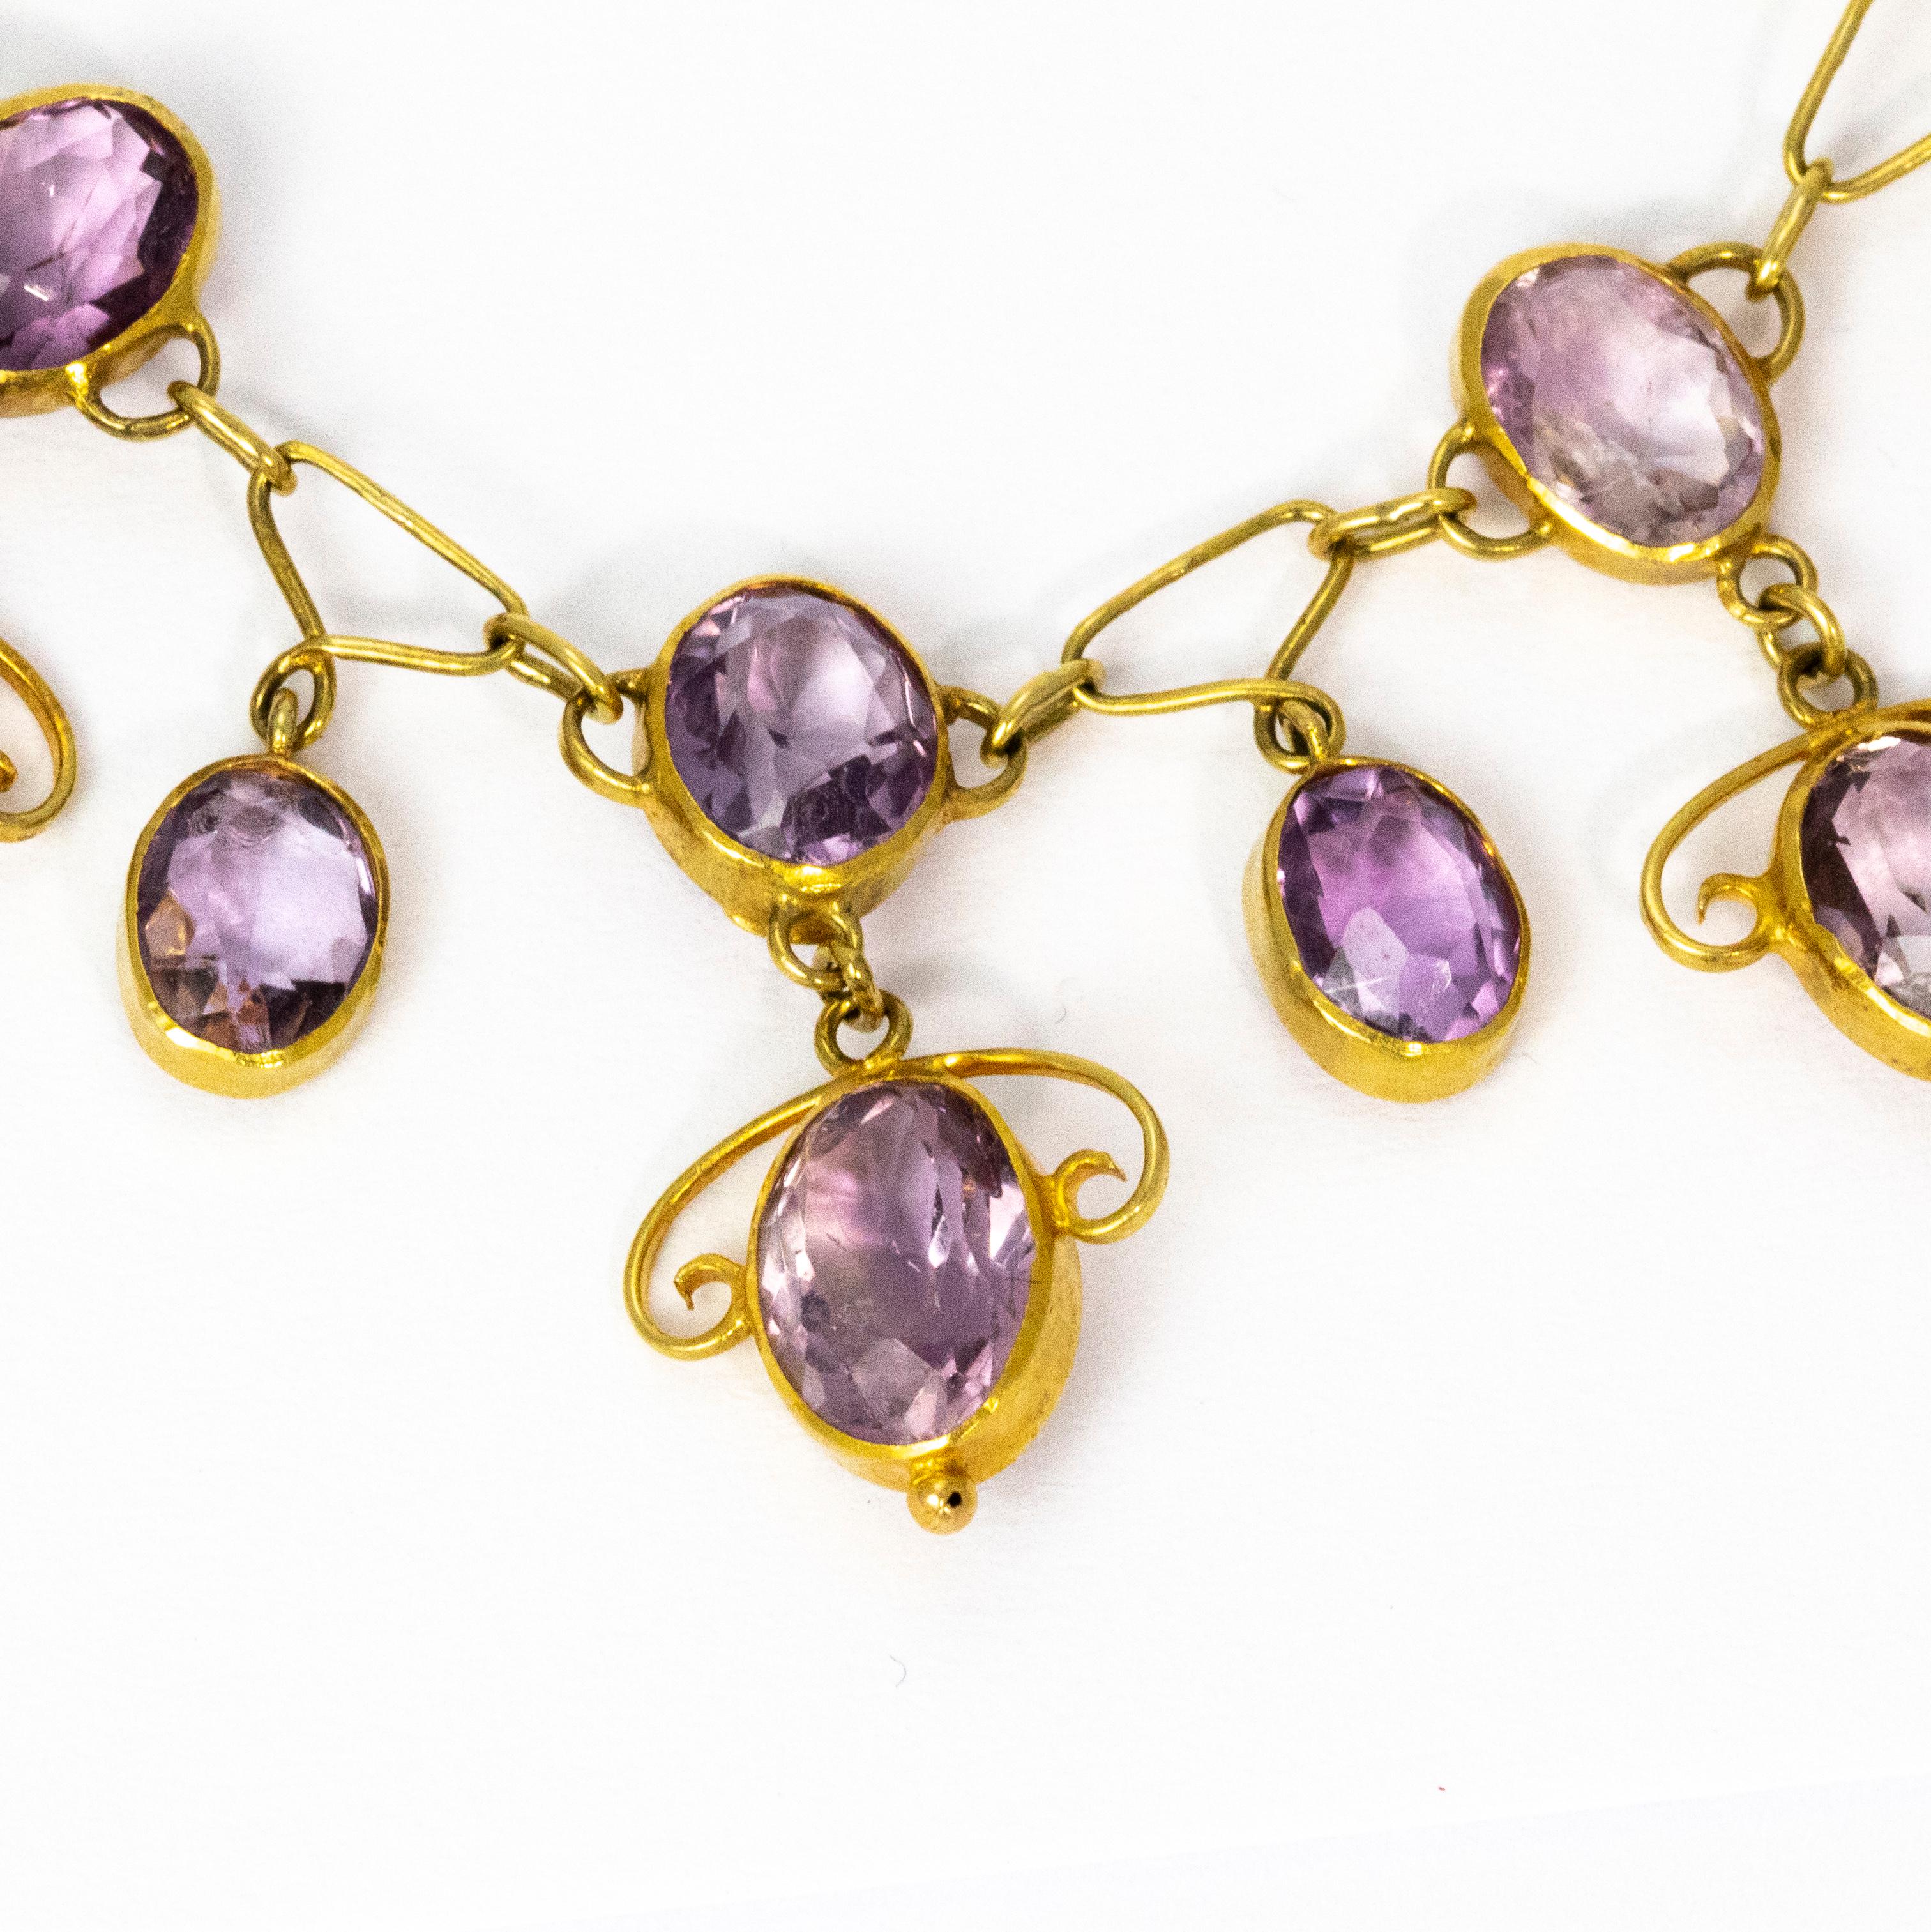 Women's Art Nouveau Amethyst 15 Carat Gold Necklace by Liberty & Co.